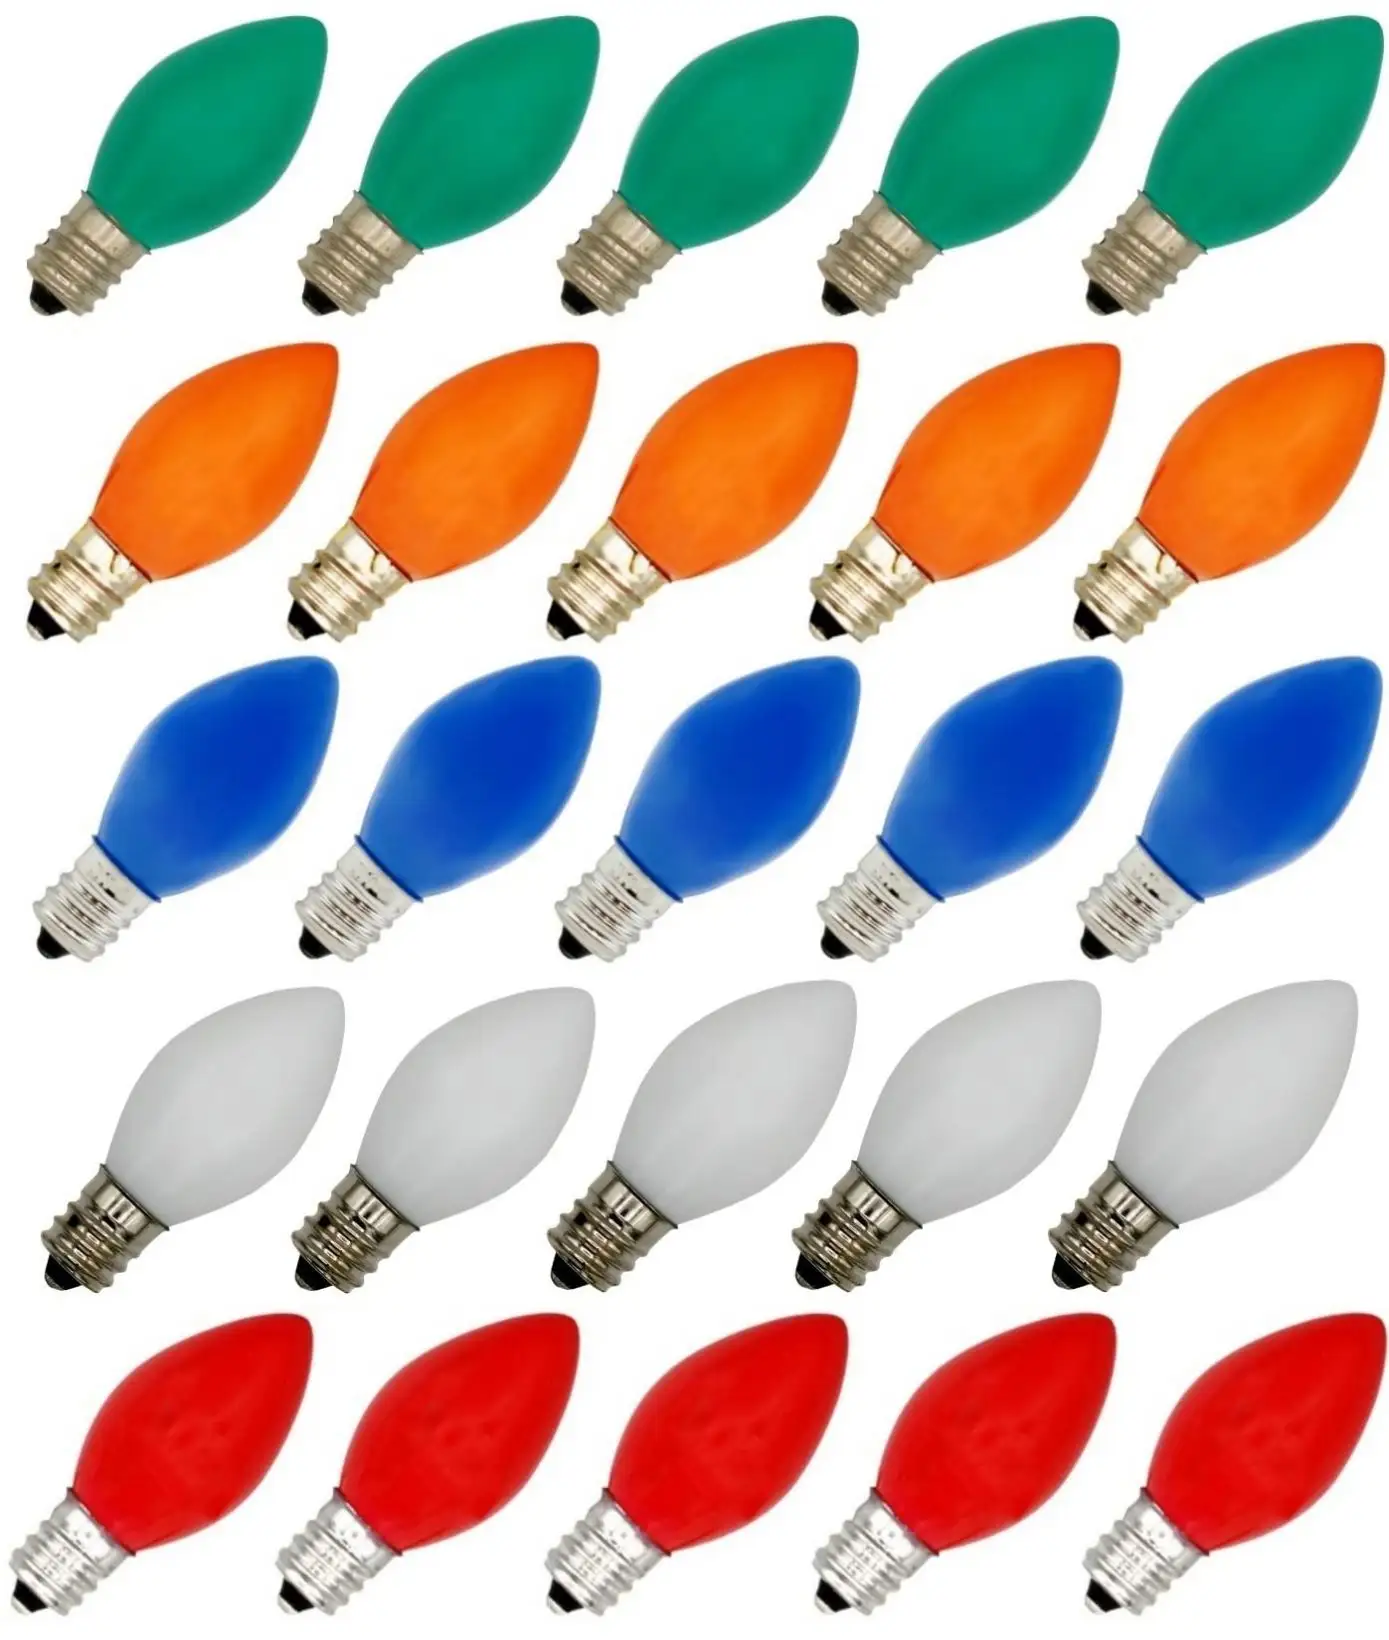 Bombillas LED multicolor C7 para cadenas de luces navideñas, bombillas LED vintage de cerámica de 0,7 W para C7